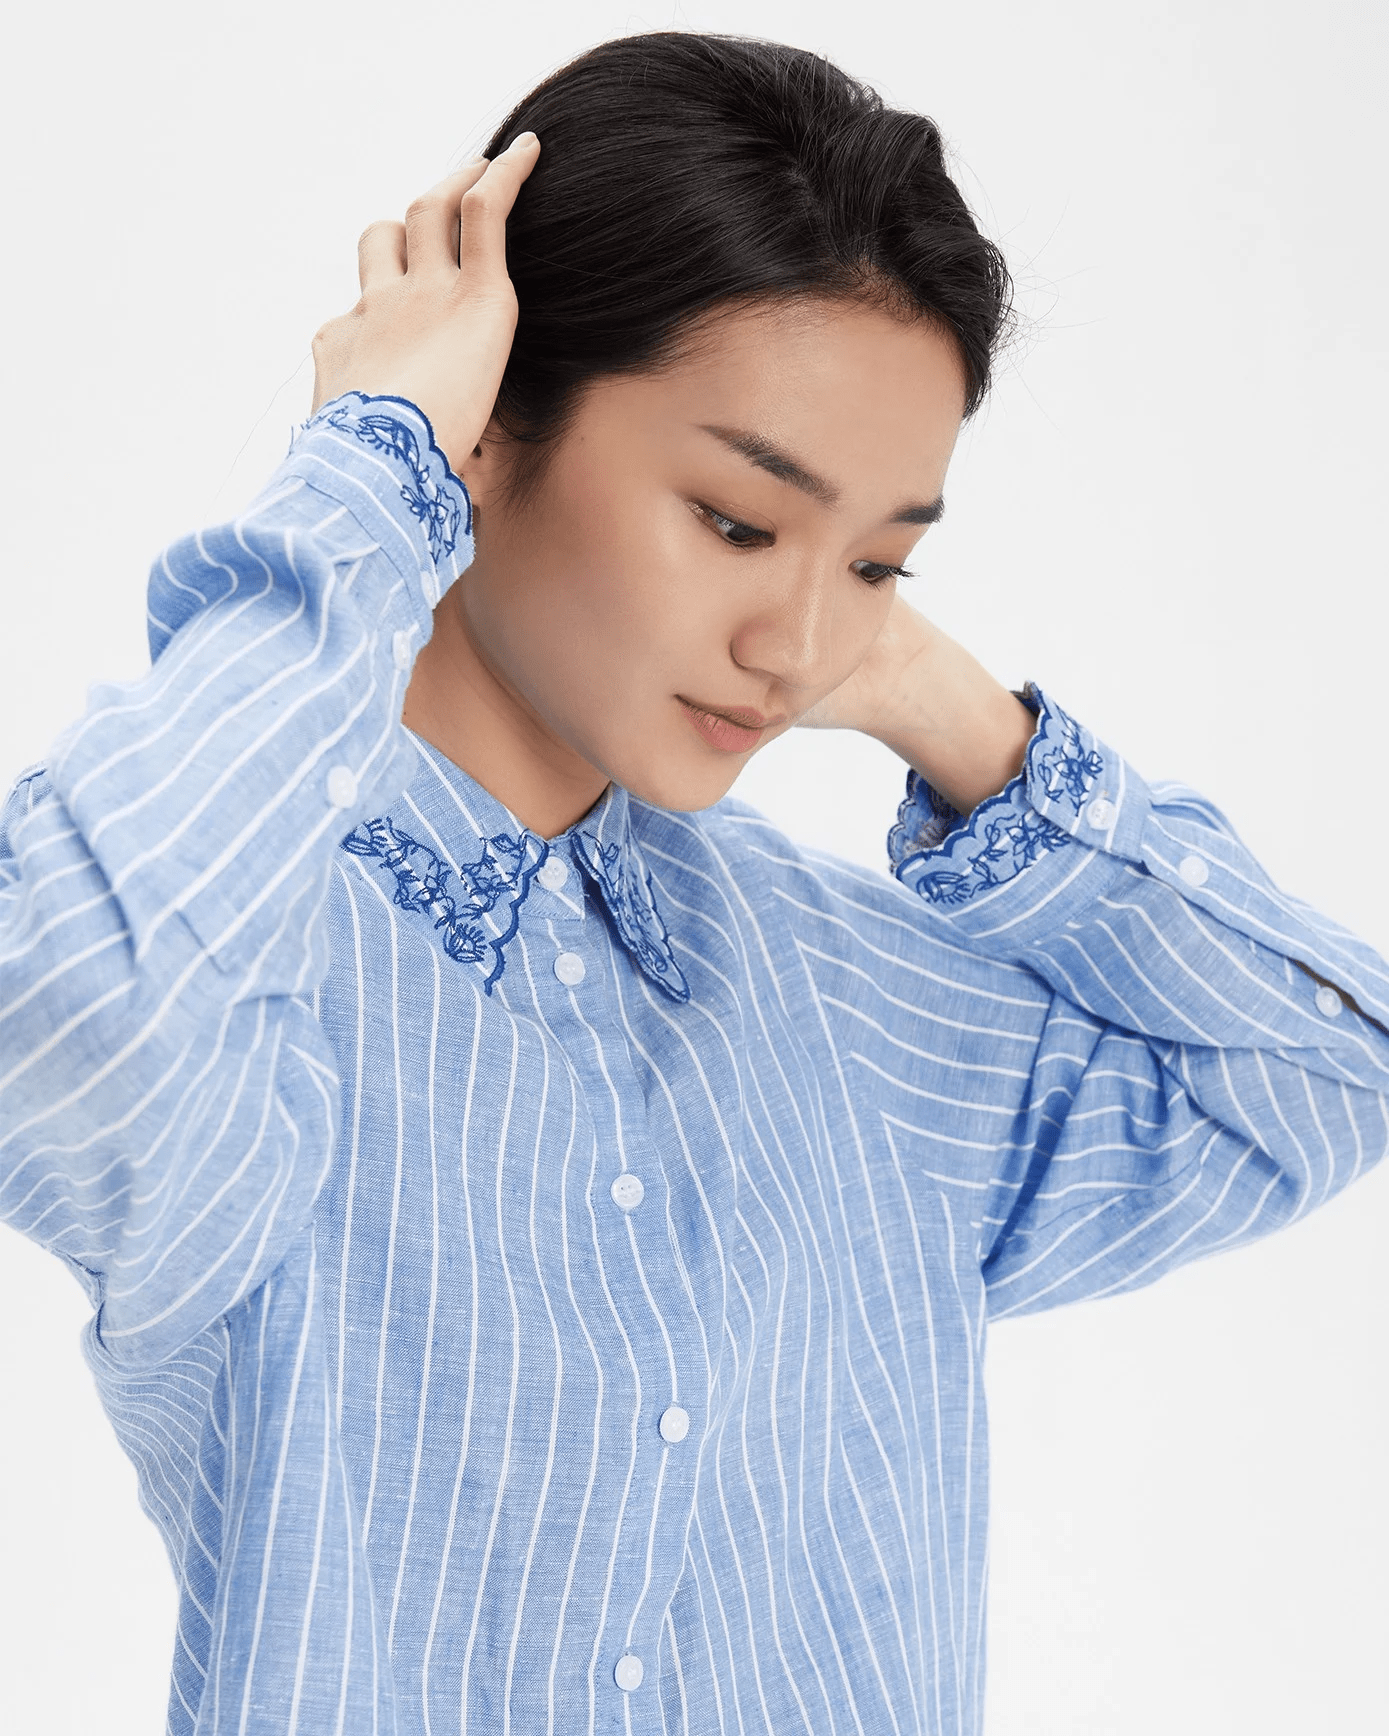 TheBlueTshirt - Áo Sơ Mi Phom Rộng Nữ Vải Lanh Cổ Áo Thêu Hoạ Tiết - Oversized Embroidered Linen Shirt - Floral Liana